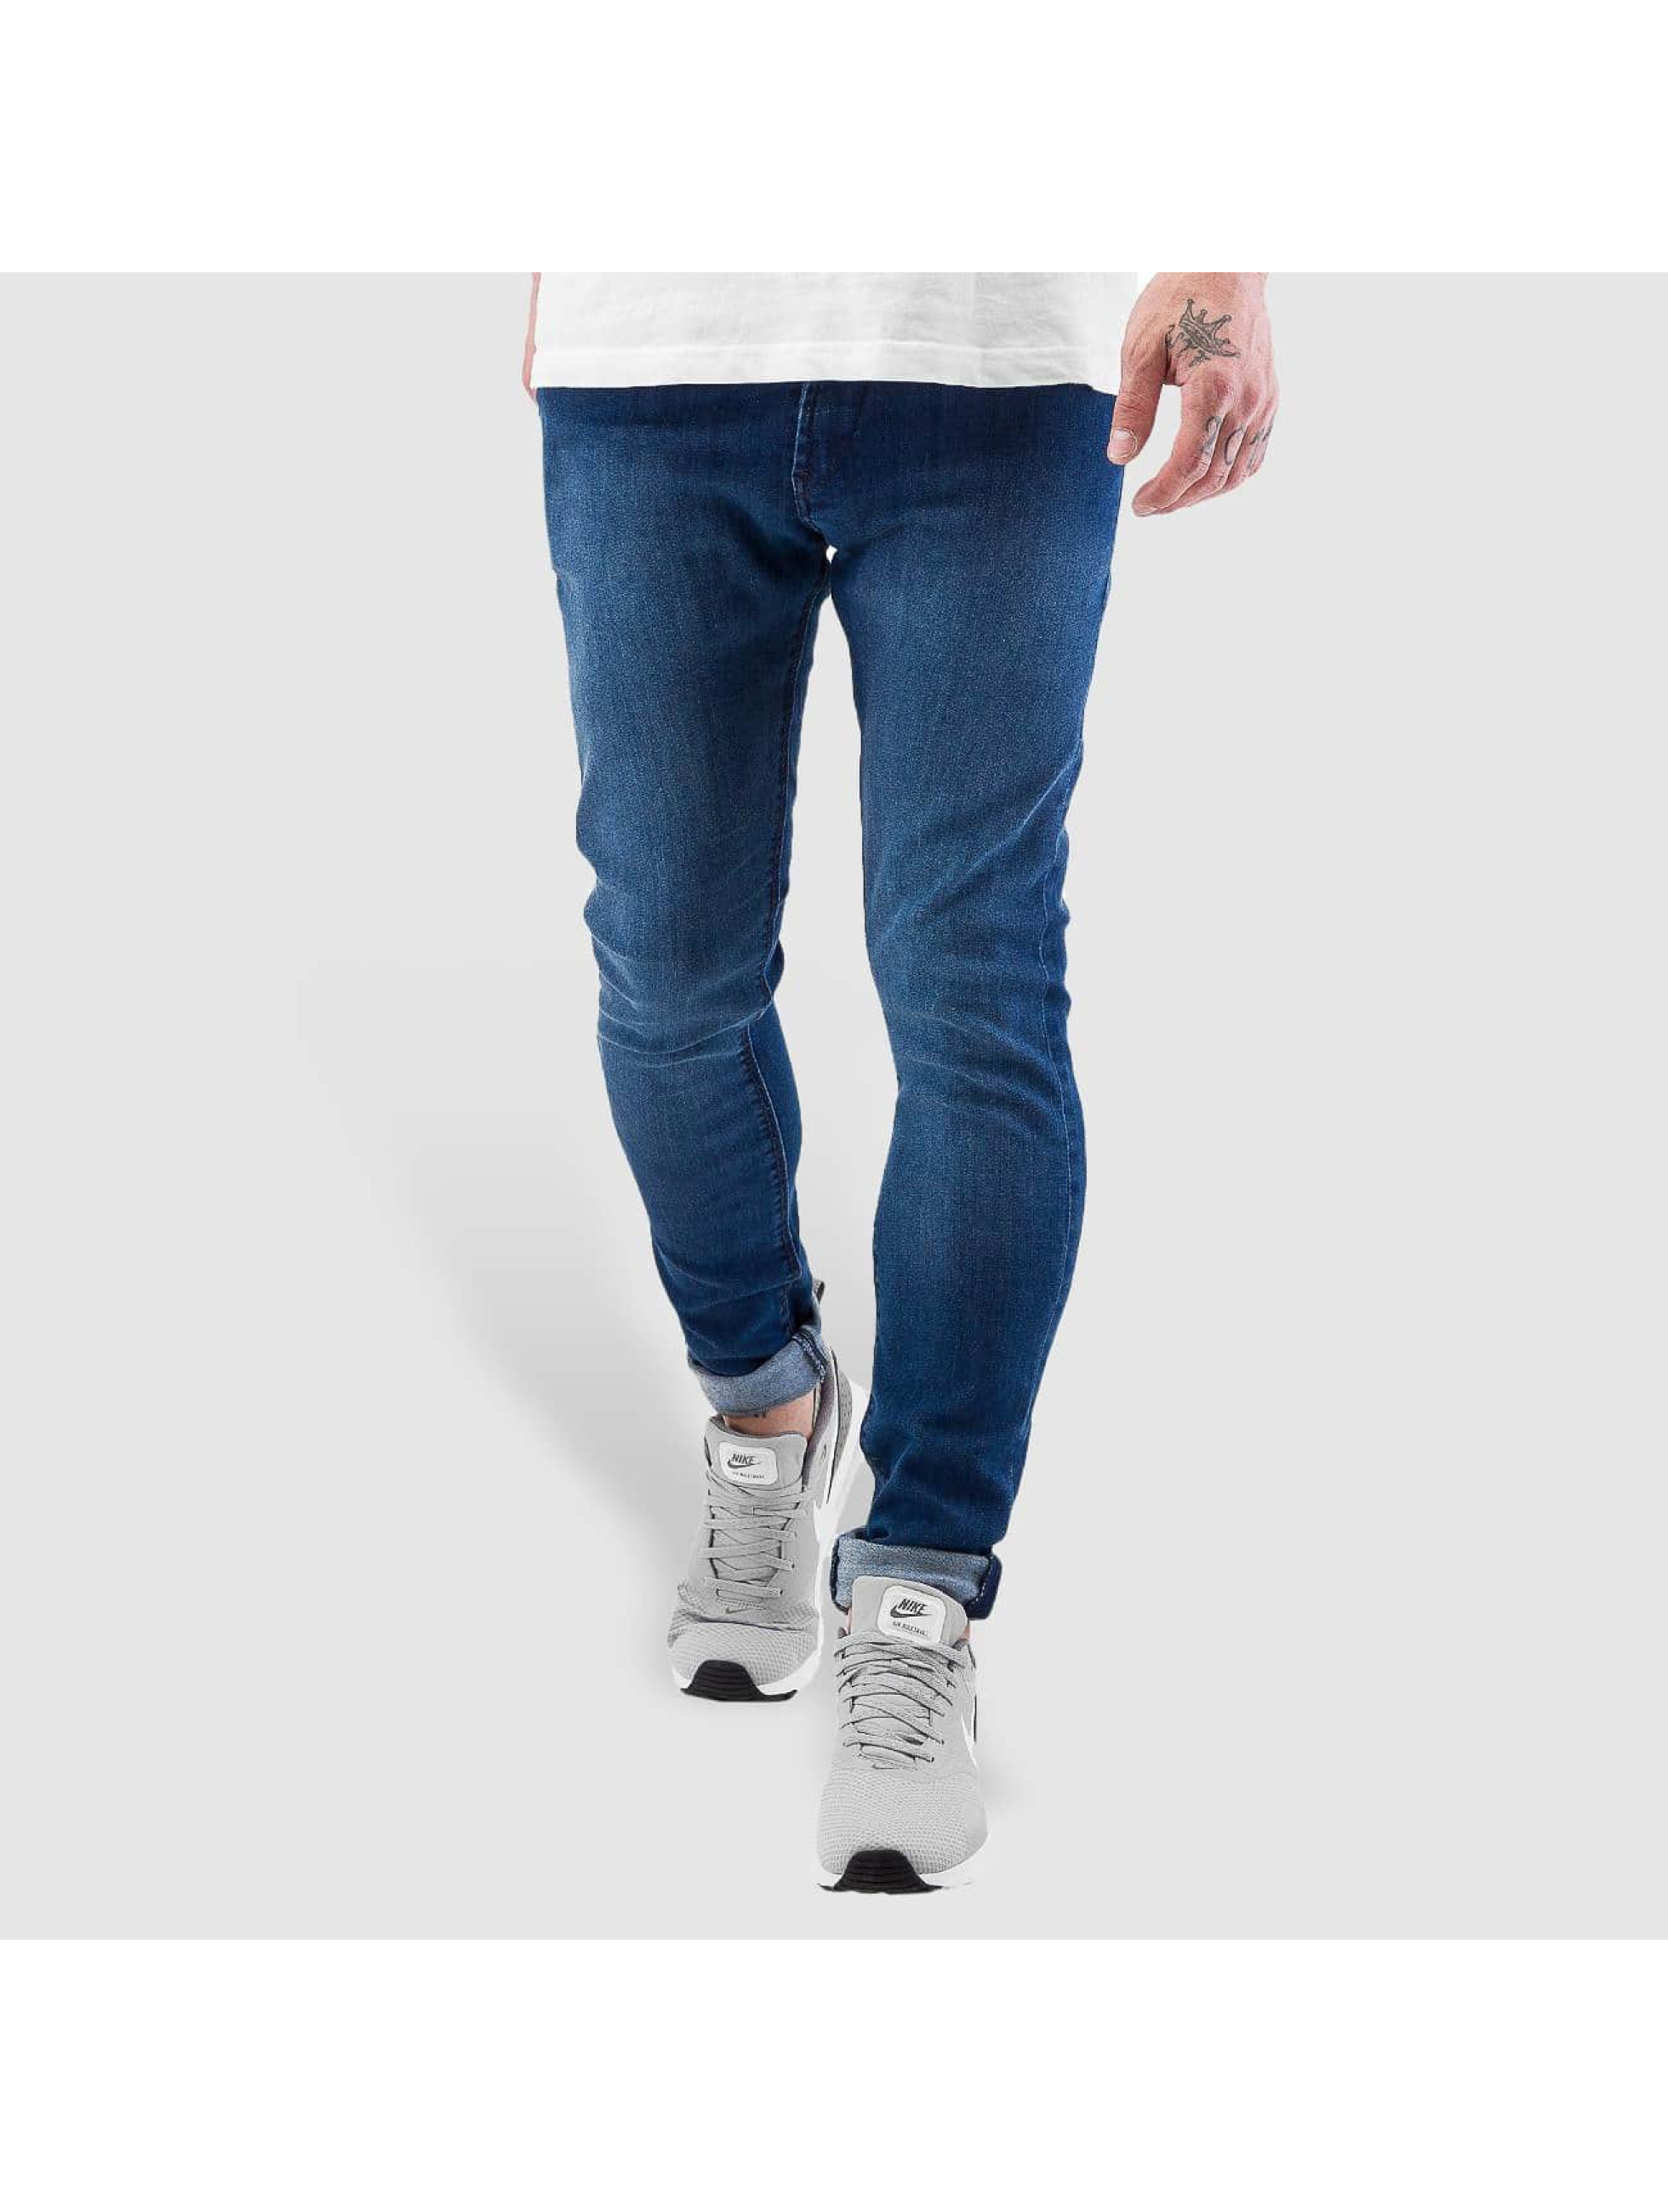 Skinny Jeans Radar Stretch Super Slim Fit in blau